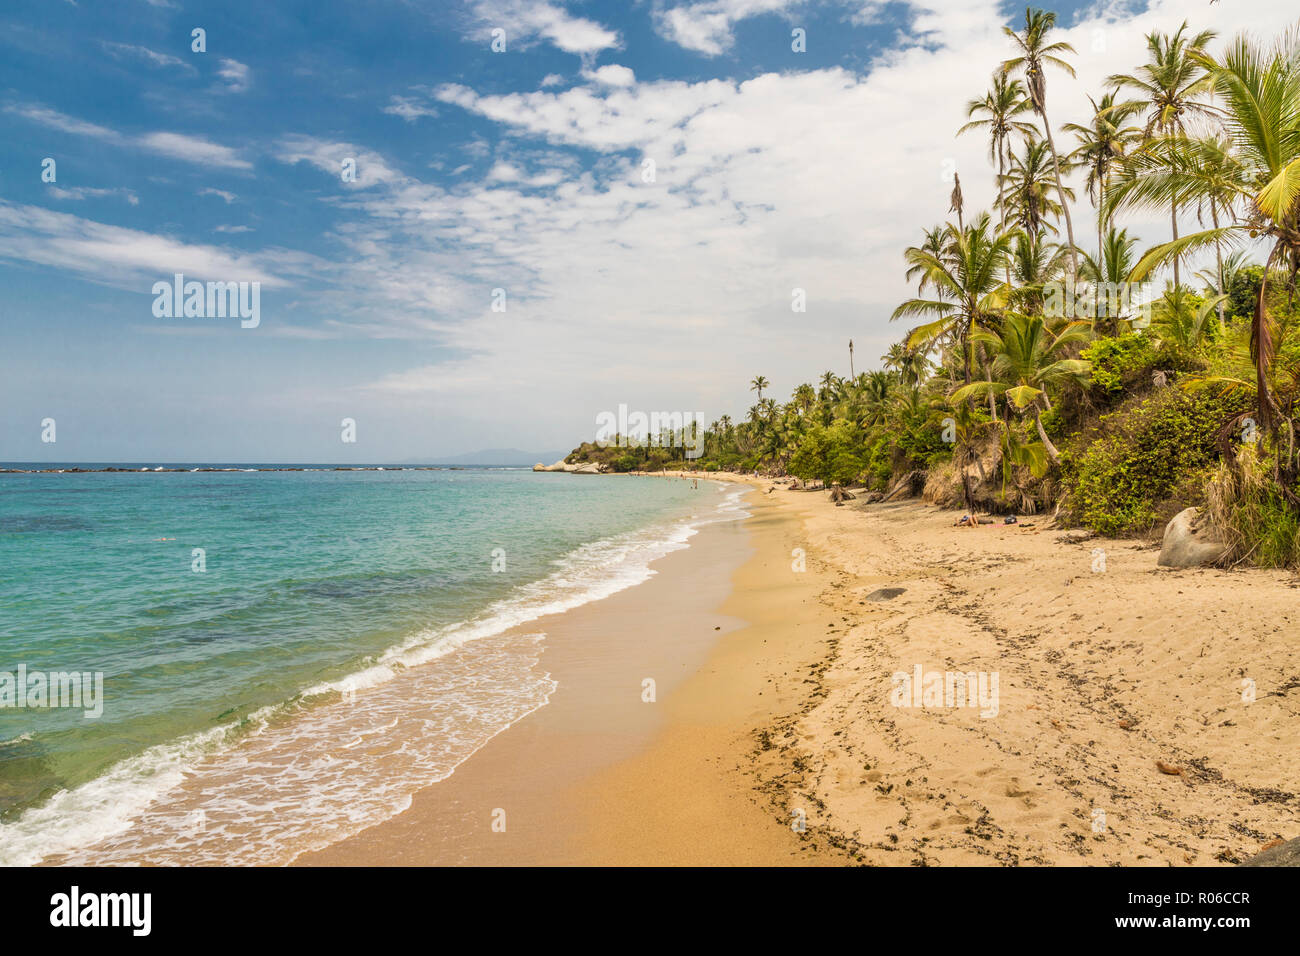 Une vue sur une plage, la jungle et la mer des Caraïbes, dans le Parc National Tayrona en Colombie, Amérique du Sud Banque D'Images